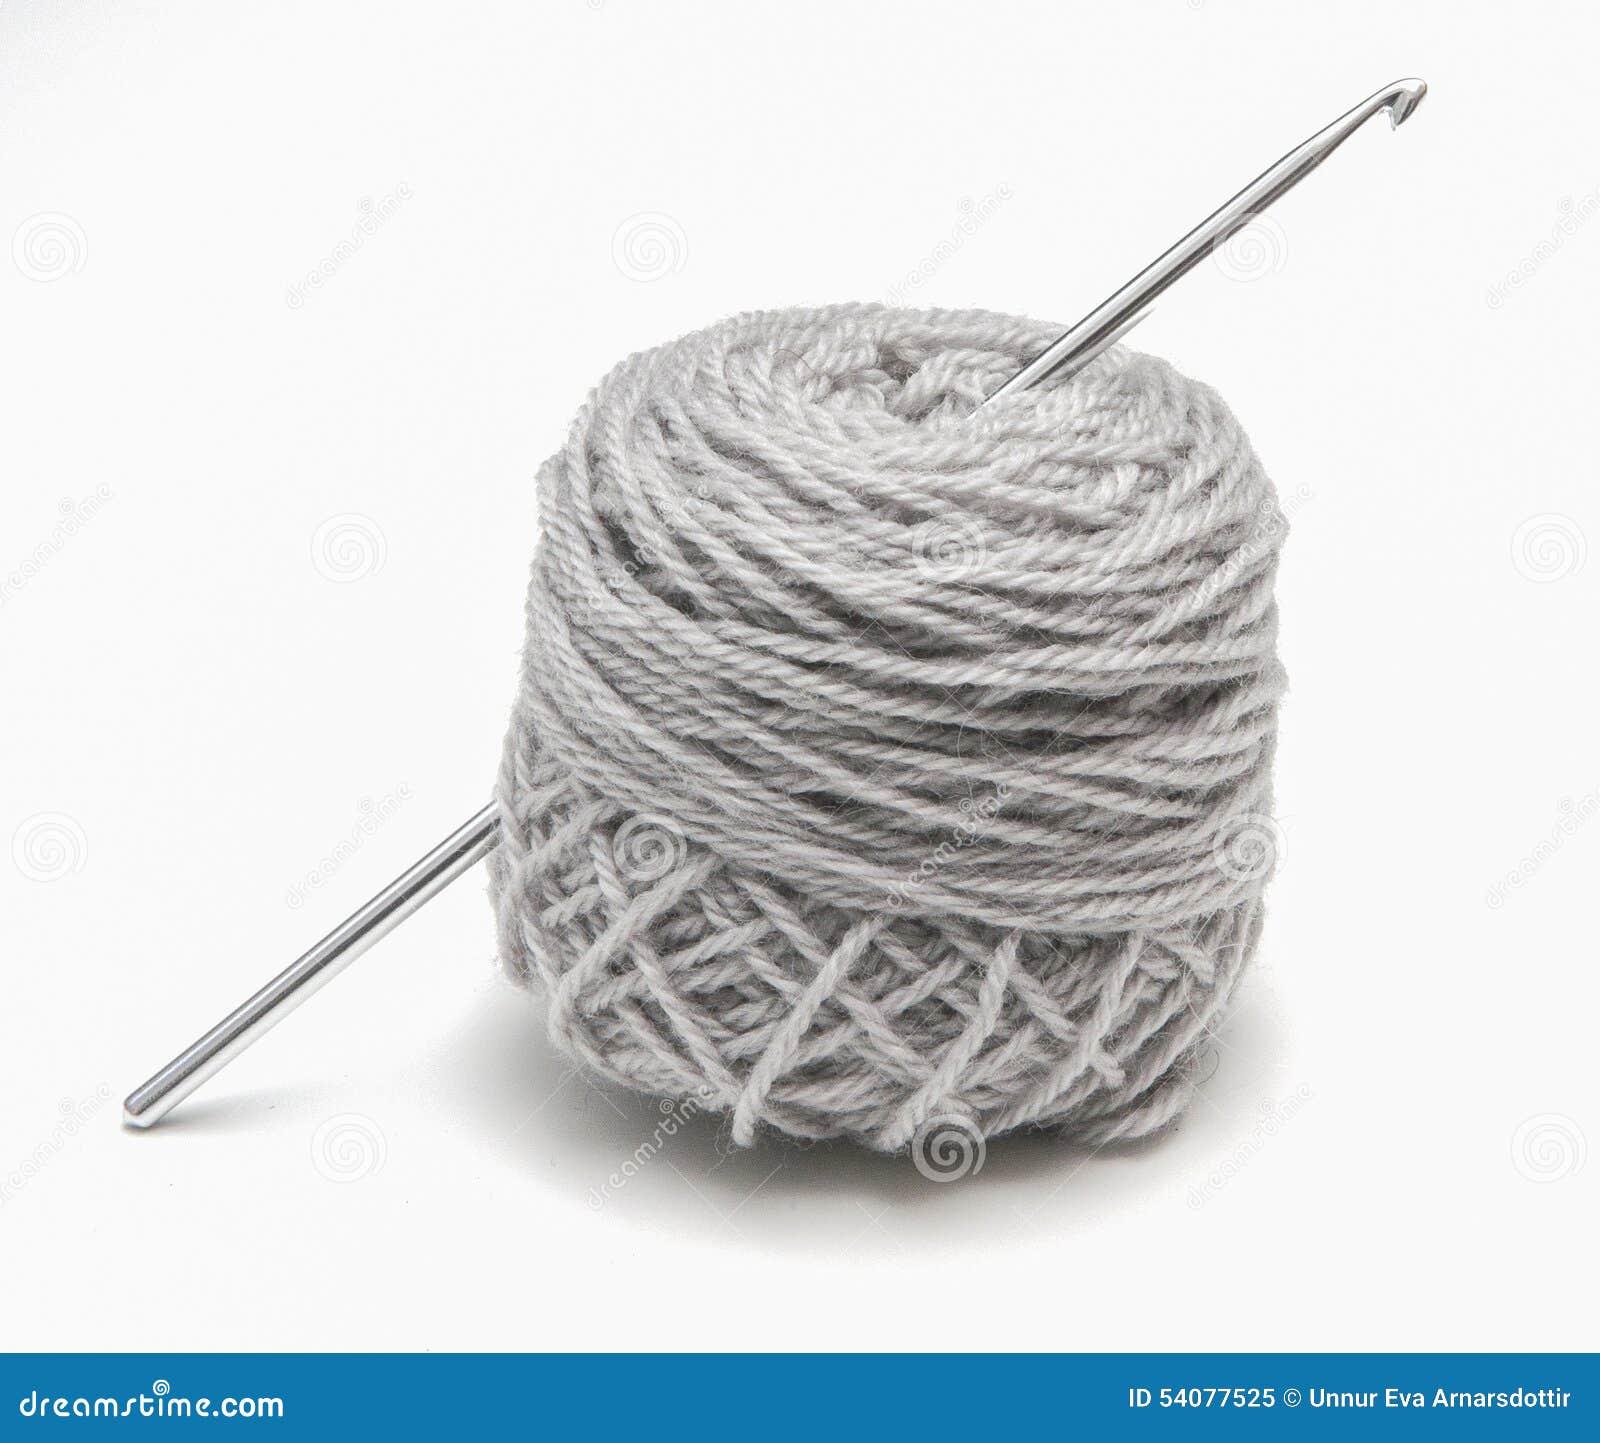 Knitting/Crochet Thread ETL Wool Ball Holder 17cm